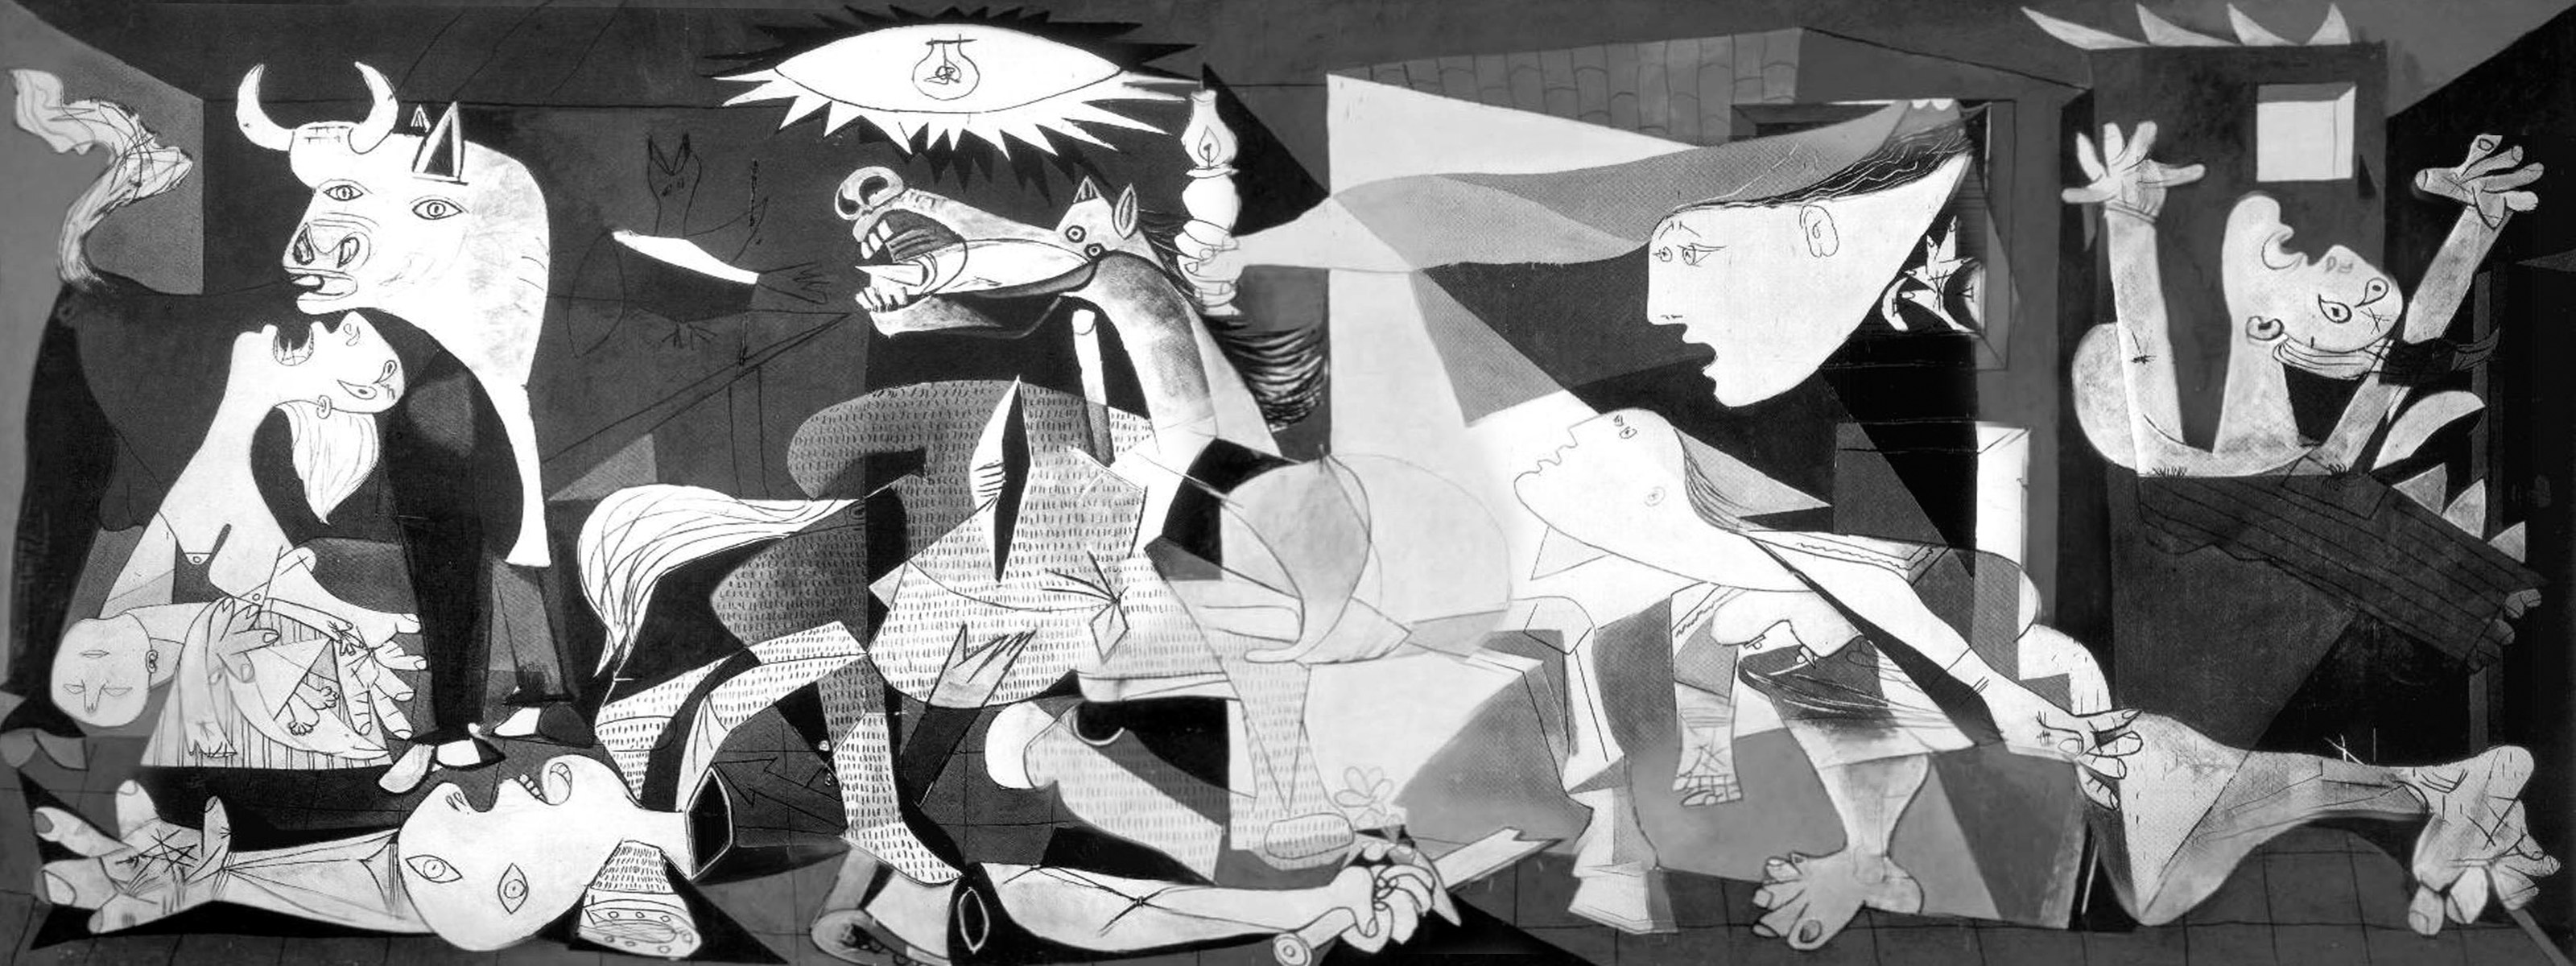 Picasso, "Guernica", 1937